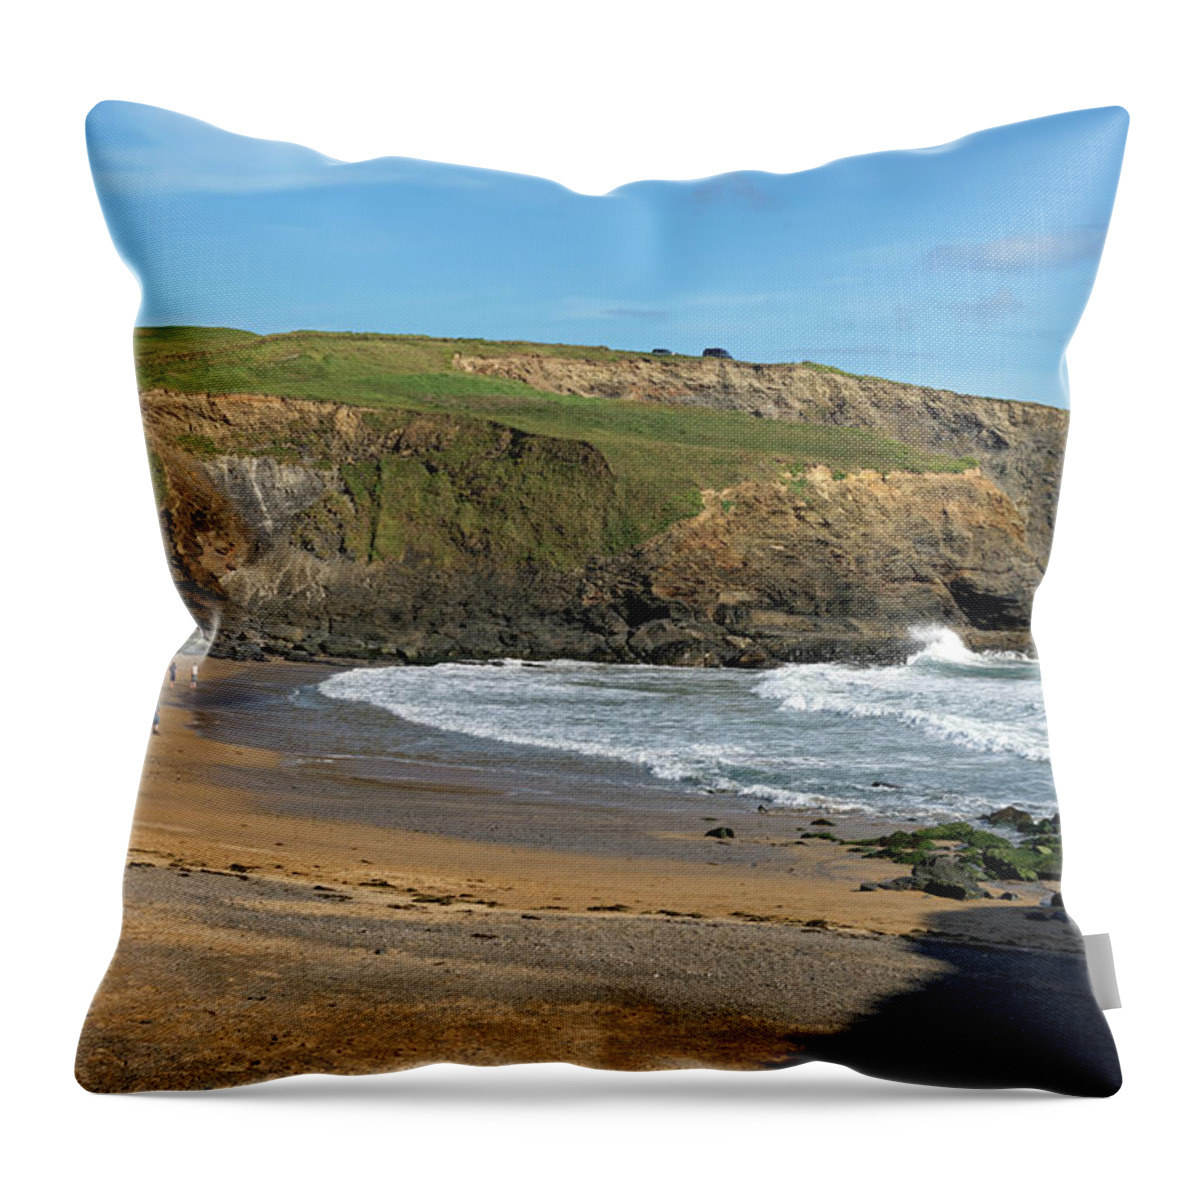 Britain Throw Pillow featuring the photograph Gunwalloe Church Cove Beach by Rod Johnson